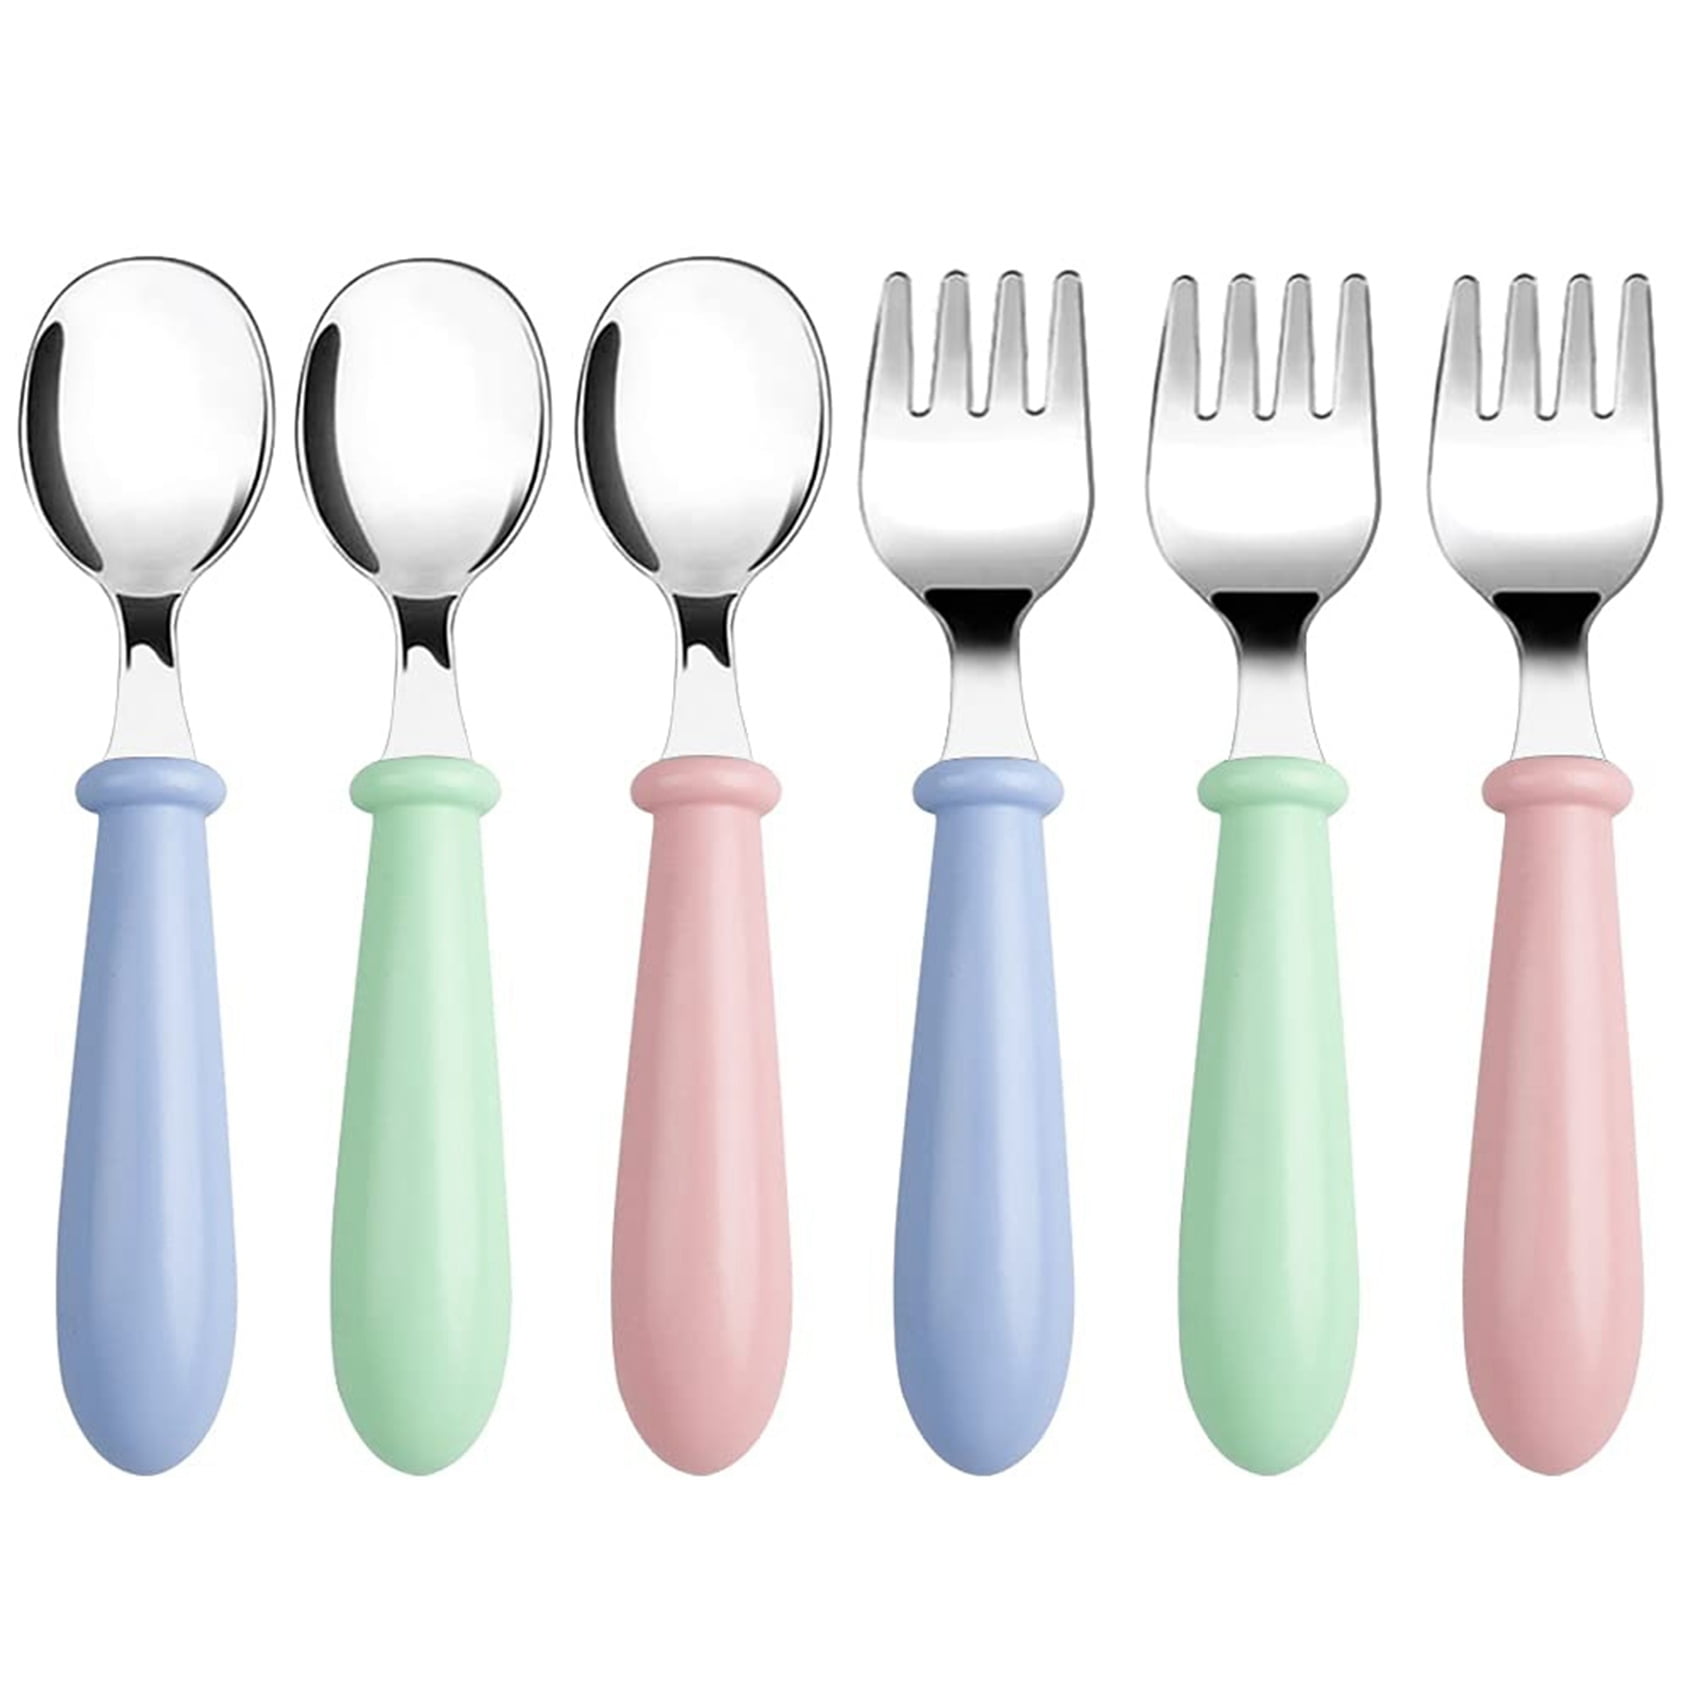 Mainstays Kids Flatware Set 6 Forks/6 Spoons Variety Of Colors Dishwasher Safe 